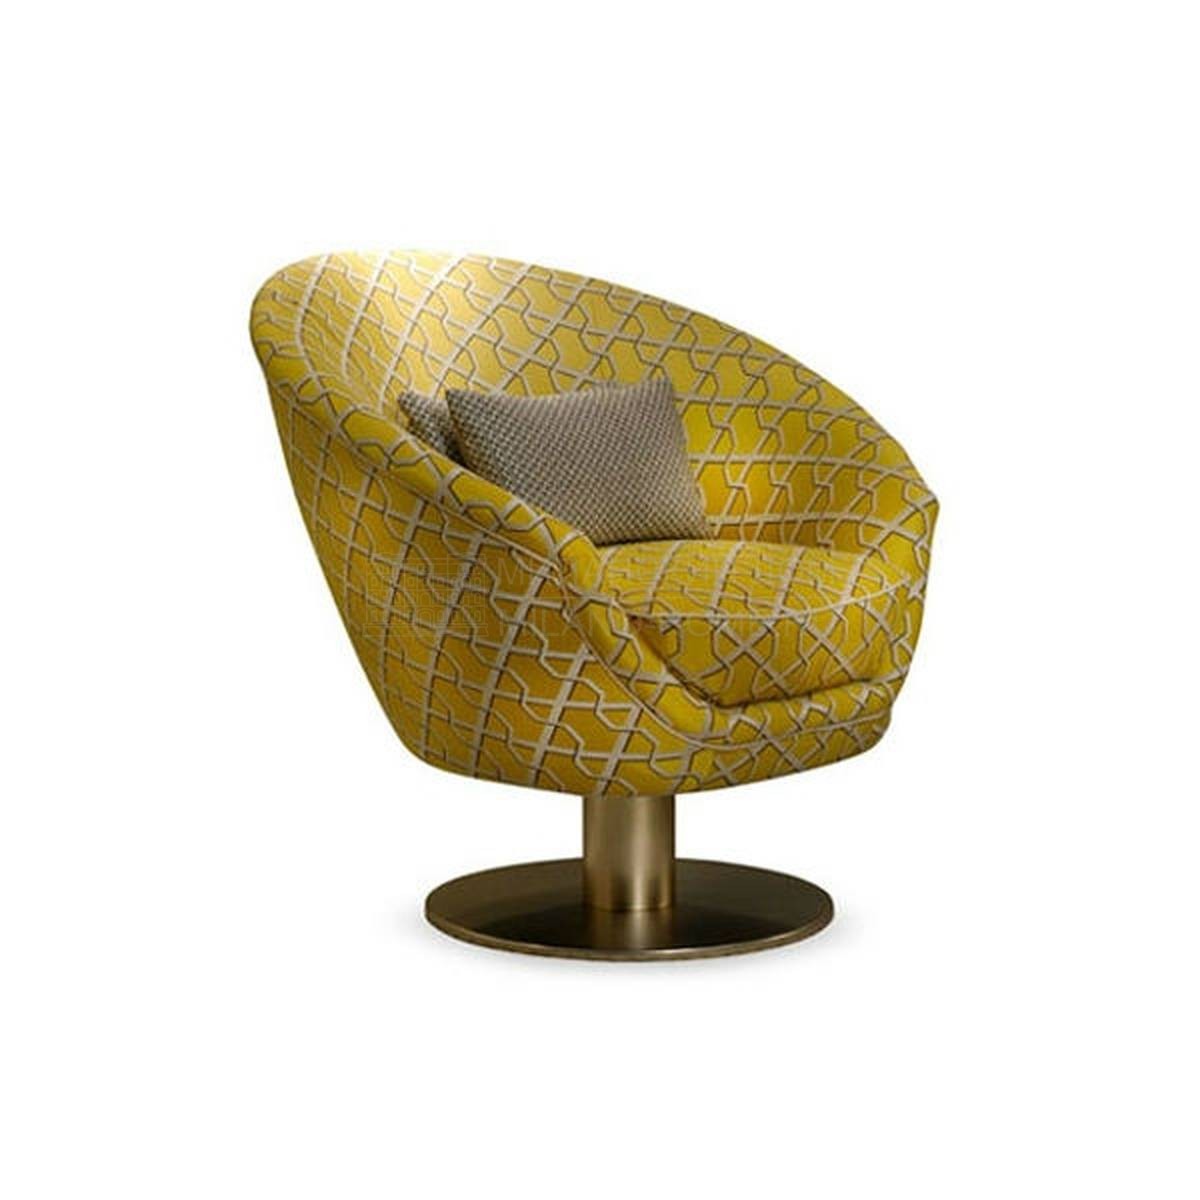 Круглое кресло Tonda yellow armchair из Италии фабрики SOFTHOUSE